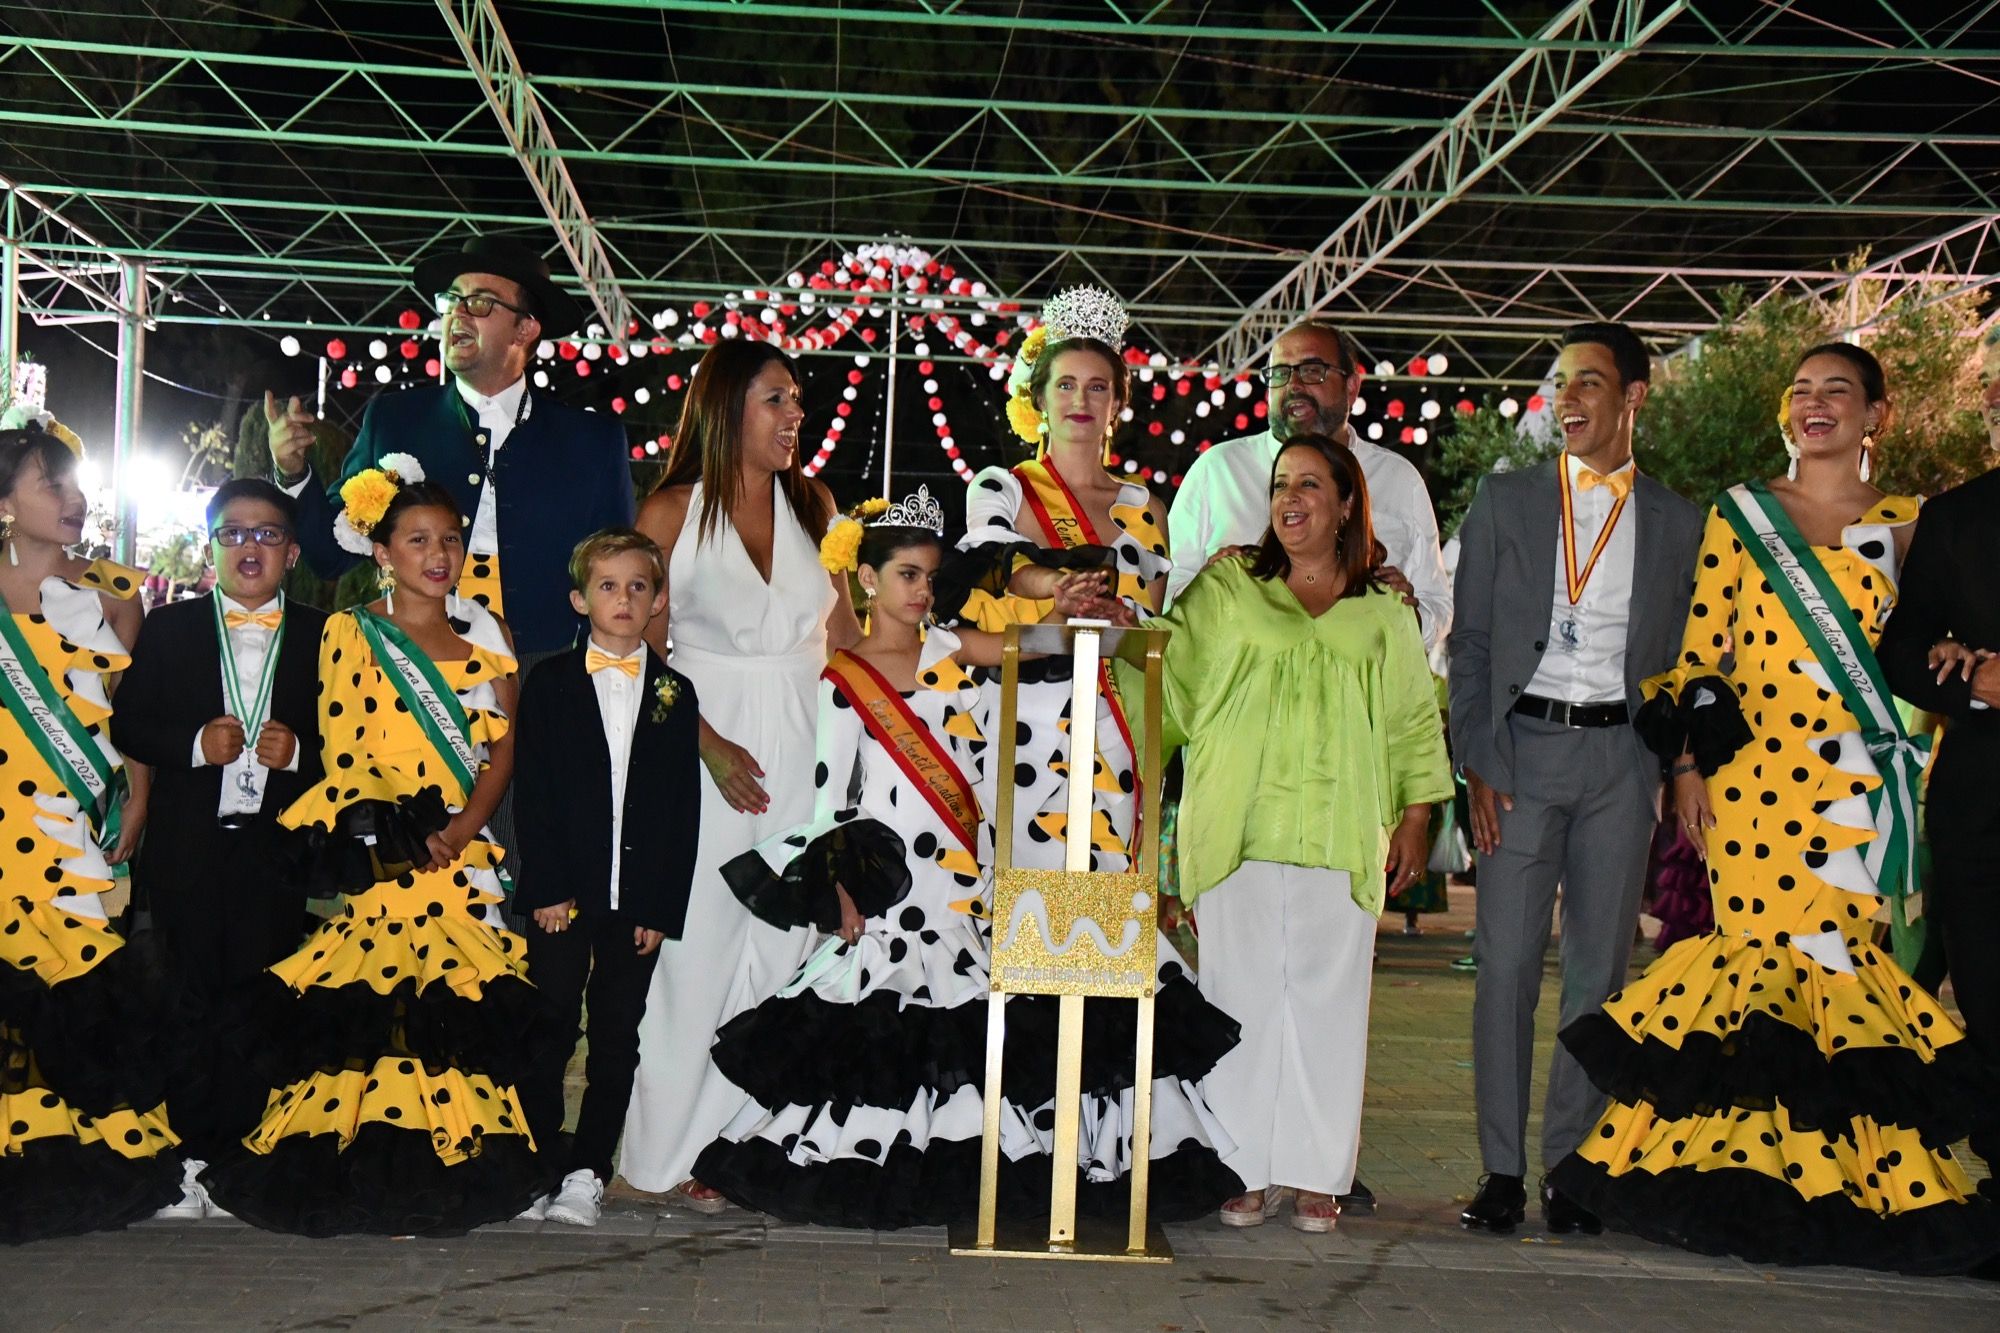 Este jueves, presentación de las Damas del Mar, primer acto de la Feria de Torreguadiaro.